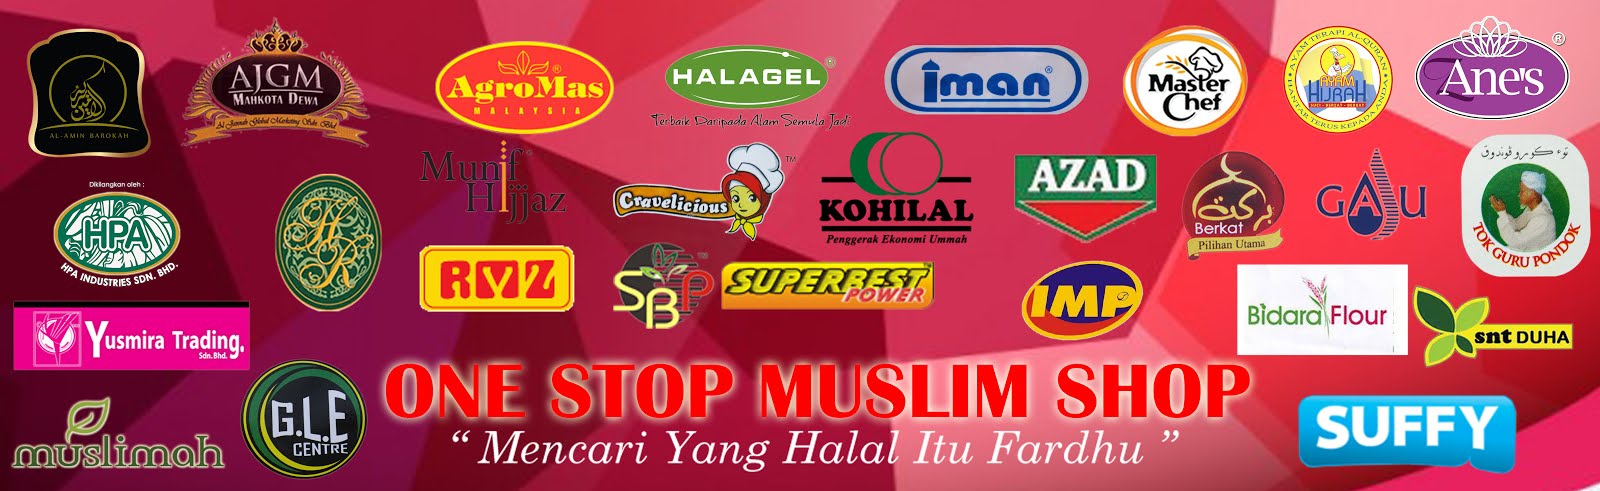 ONE STOP MUSLIM SHOP